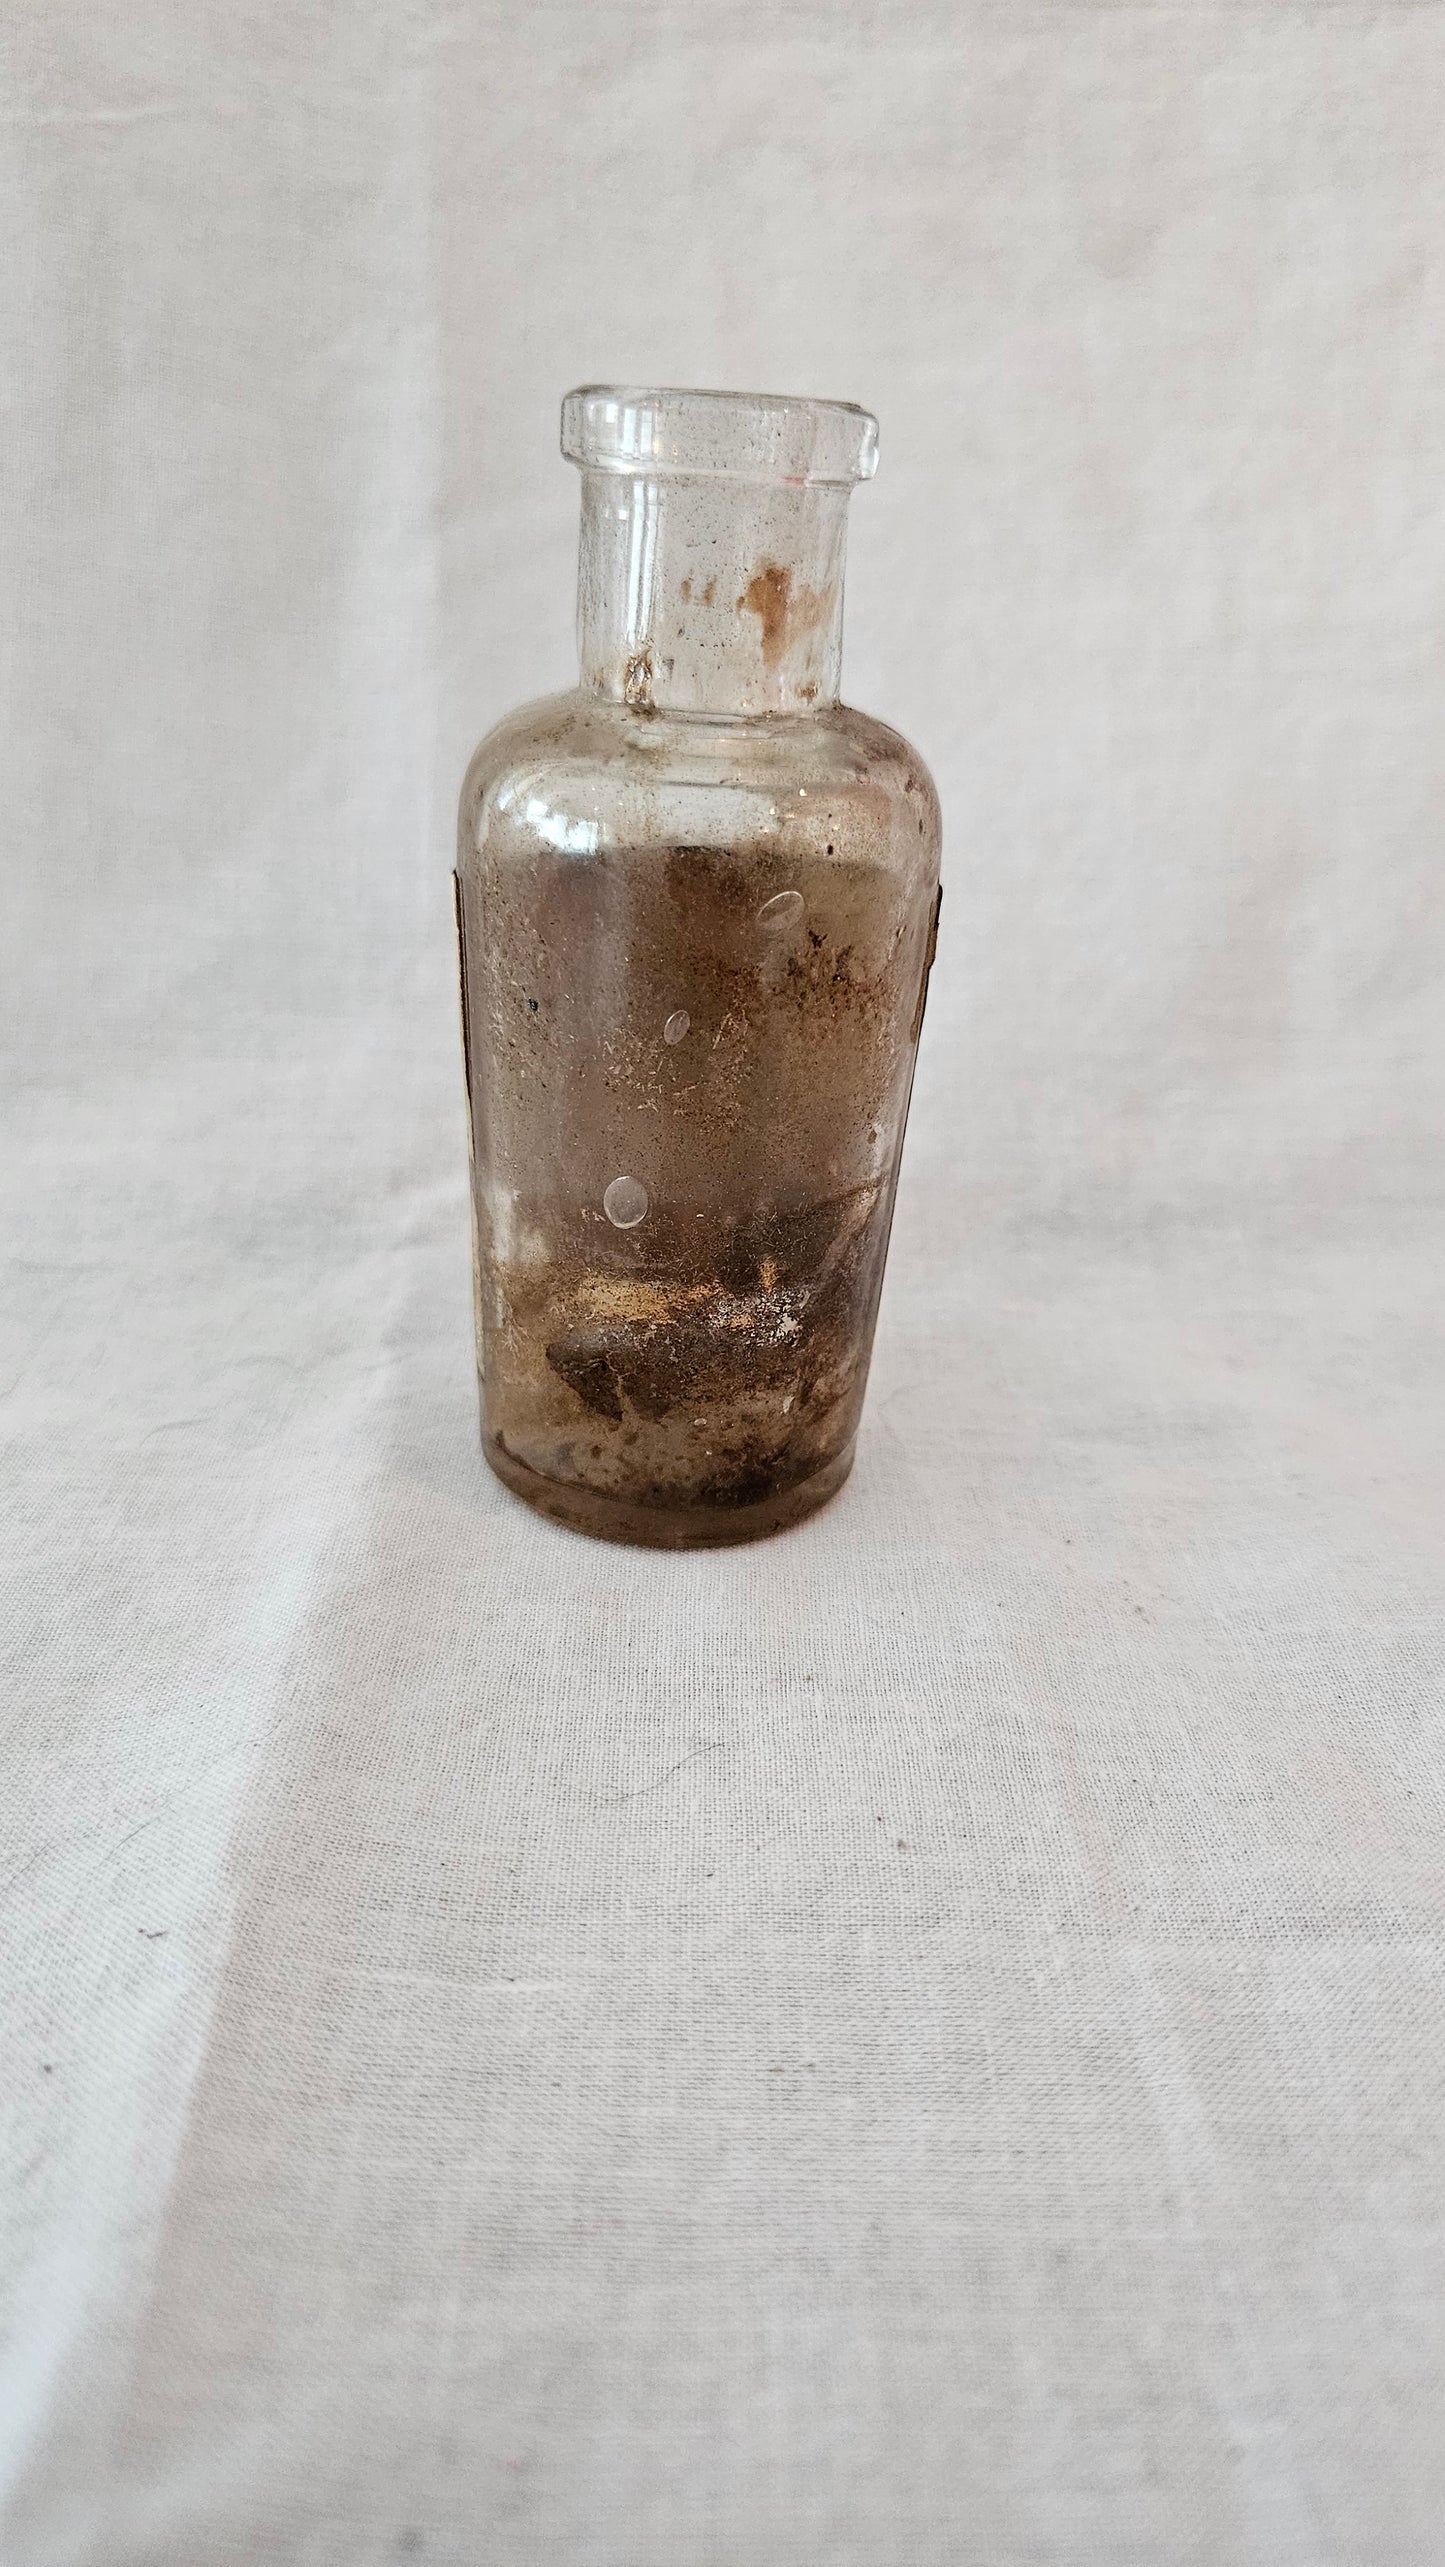 Vintage Medicine Bottle by Schering & Glatz - 1876-1918